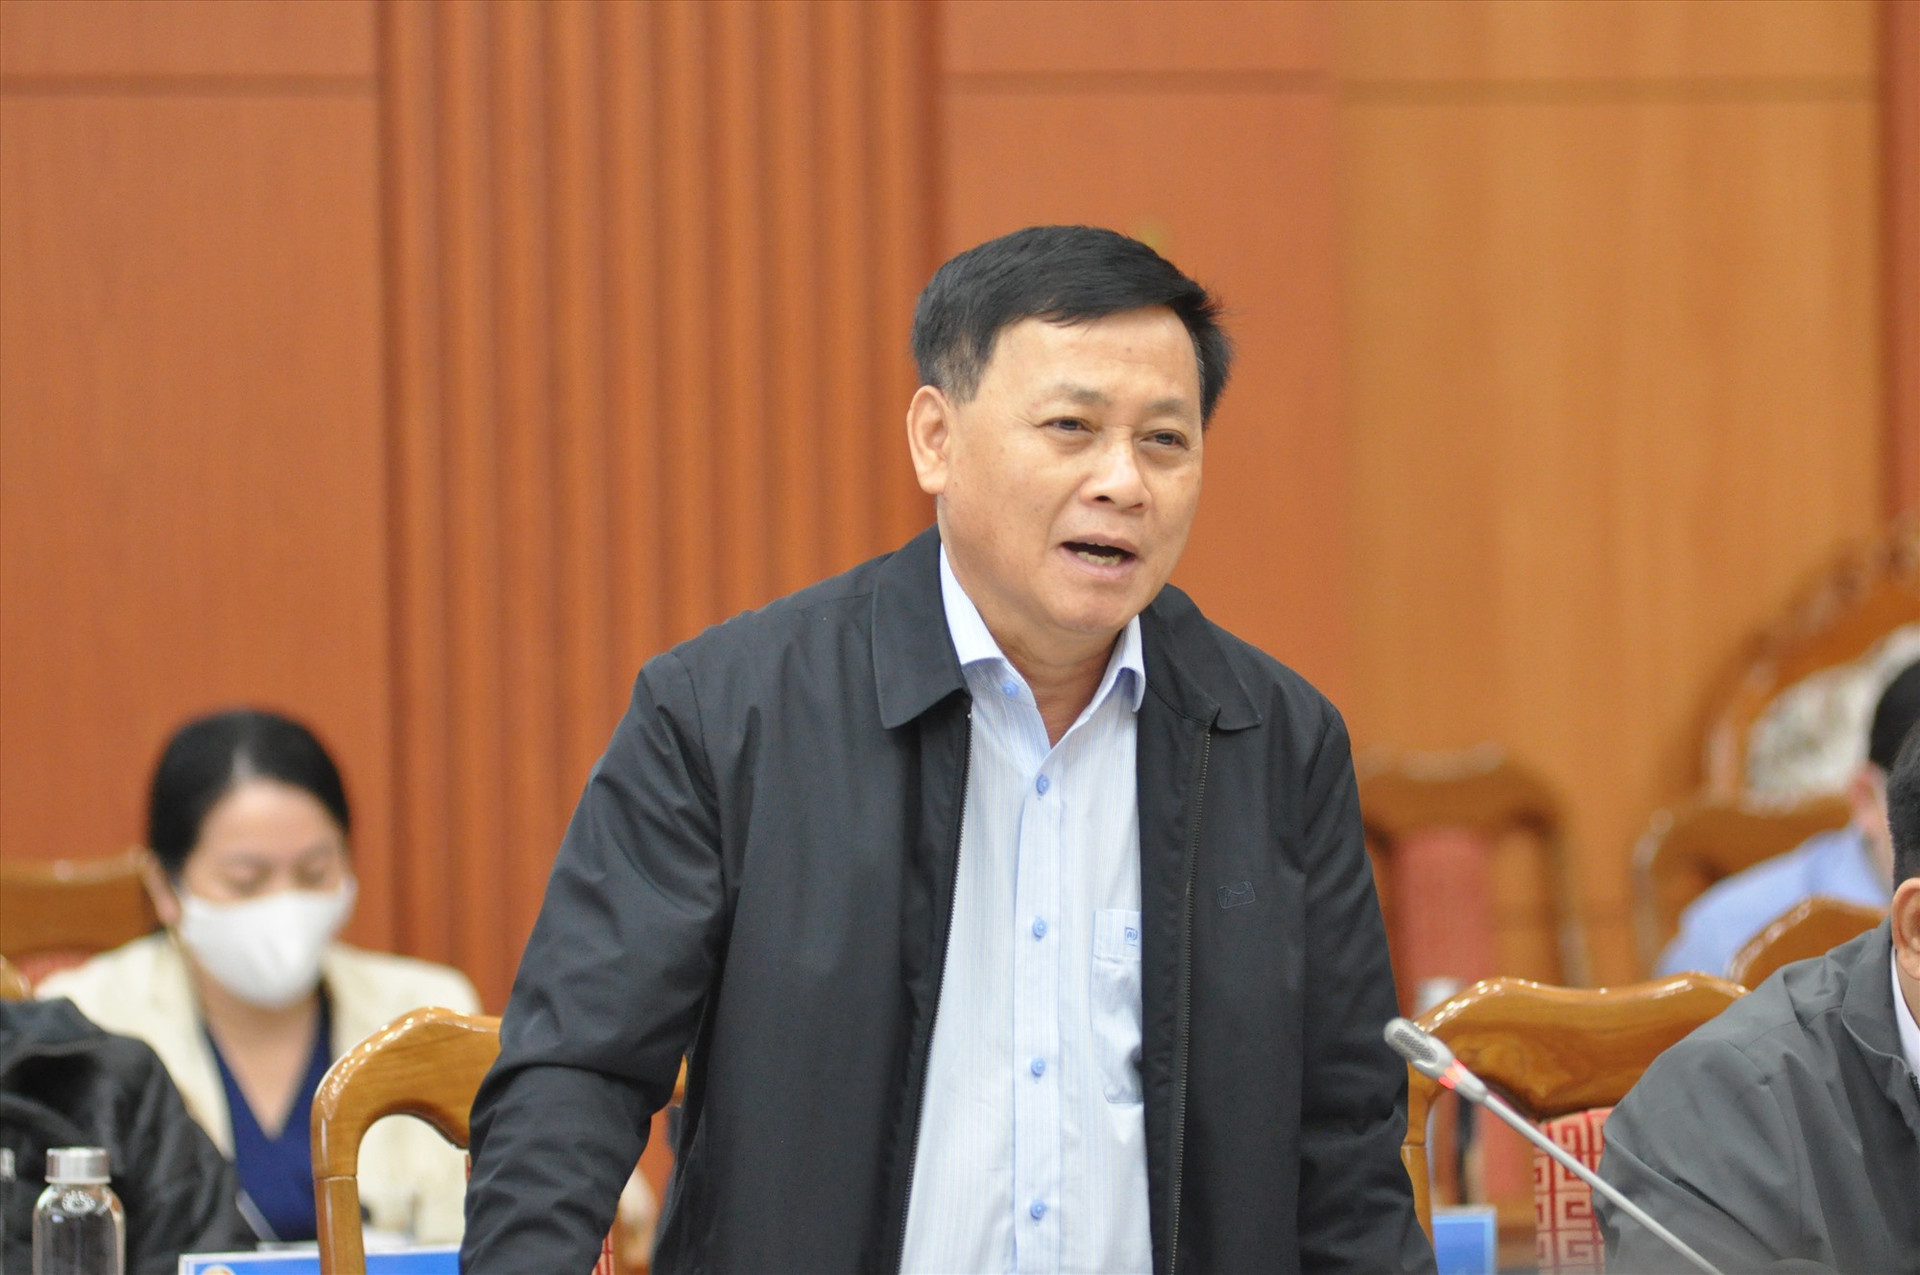 Giám đốc Sở Kế hoạch đầu tư Nguyễn Quang Thử trả lời câu hỏi của phóng viên về đấu thầu. Ảnh: X.P